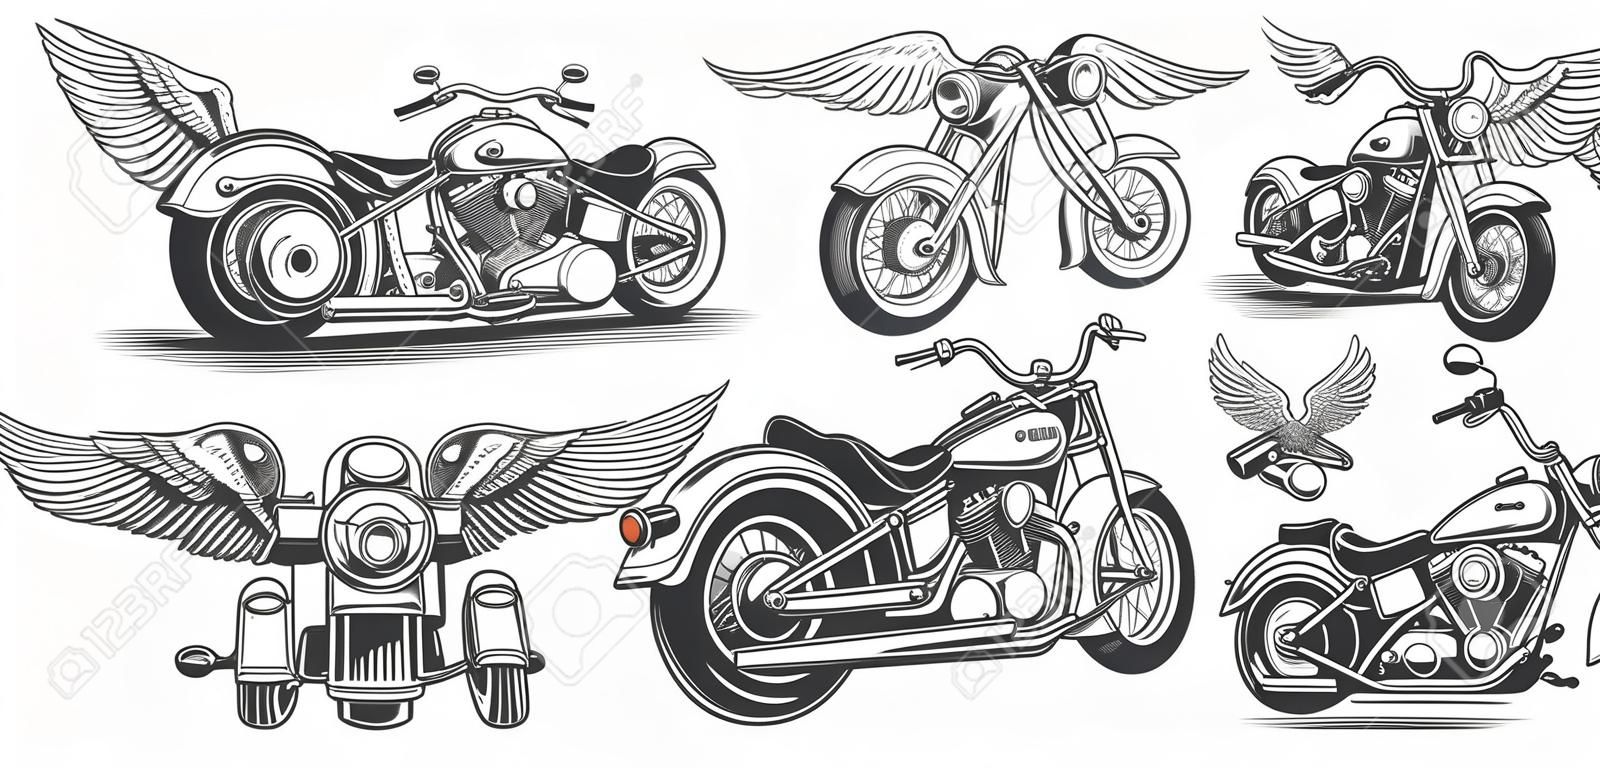 Set von Illustrationen, Icons von handgezeichneten Vintage Motorrad in verschiedenen Winkeln, Schädel, Flügel im Stil der Gravur. Klassischer Chopper im Tintenstil. Druck, Gravur, Vorlage, Design-Element